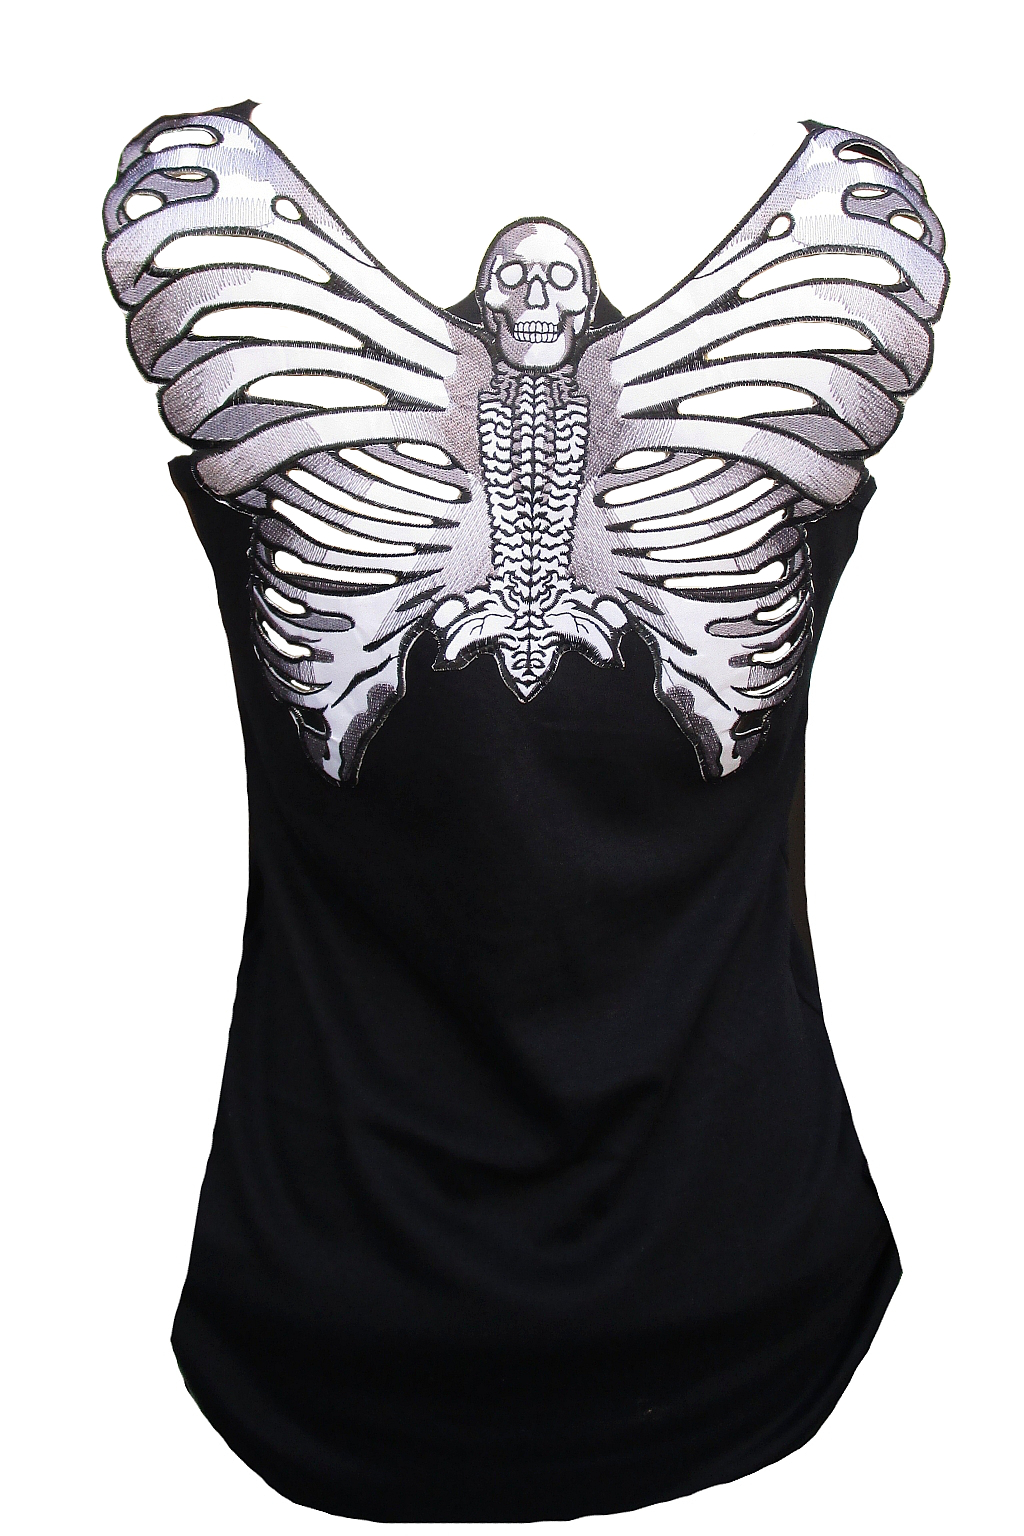 Rockabilly Punk Rock Baby Woman Black Tank Top Shirt Skeleton Butterfly Skull